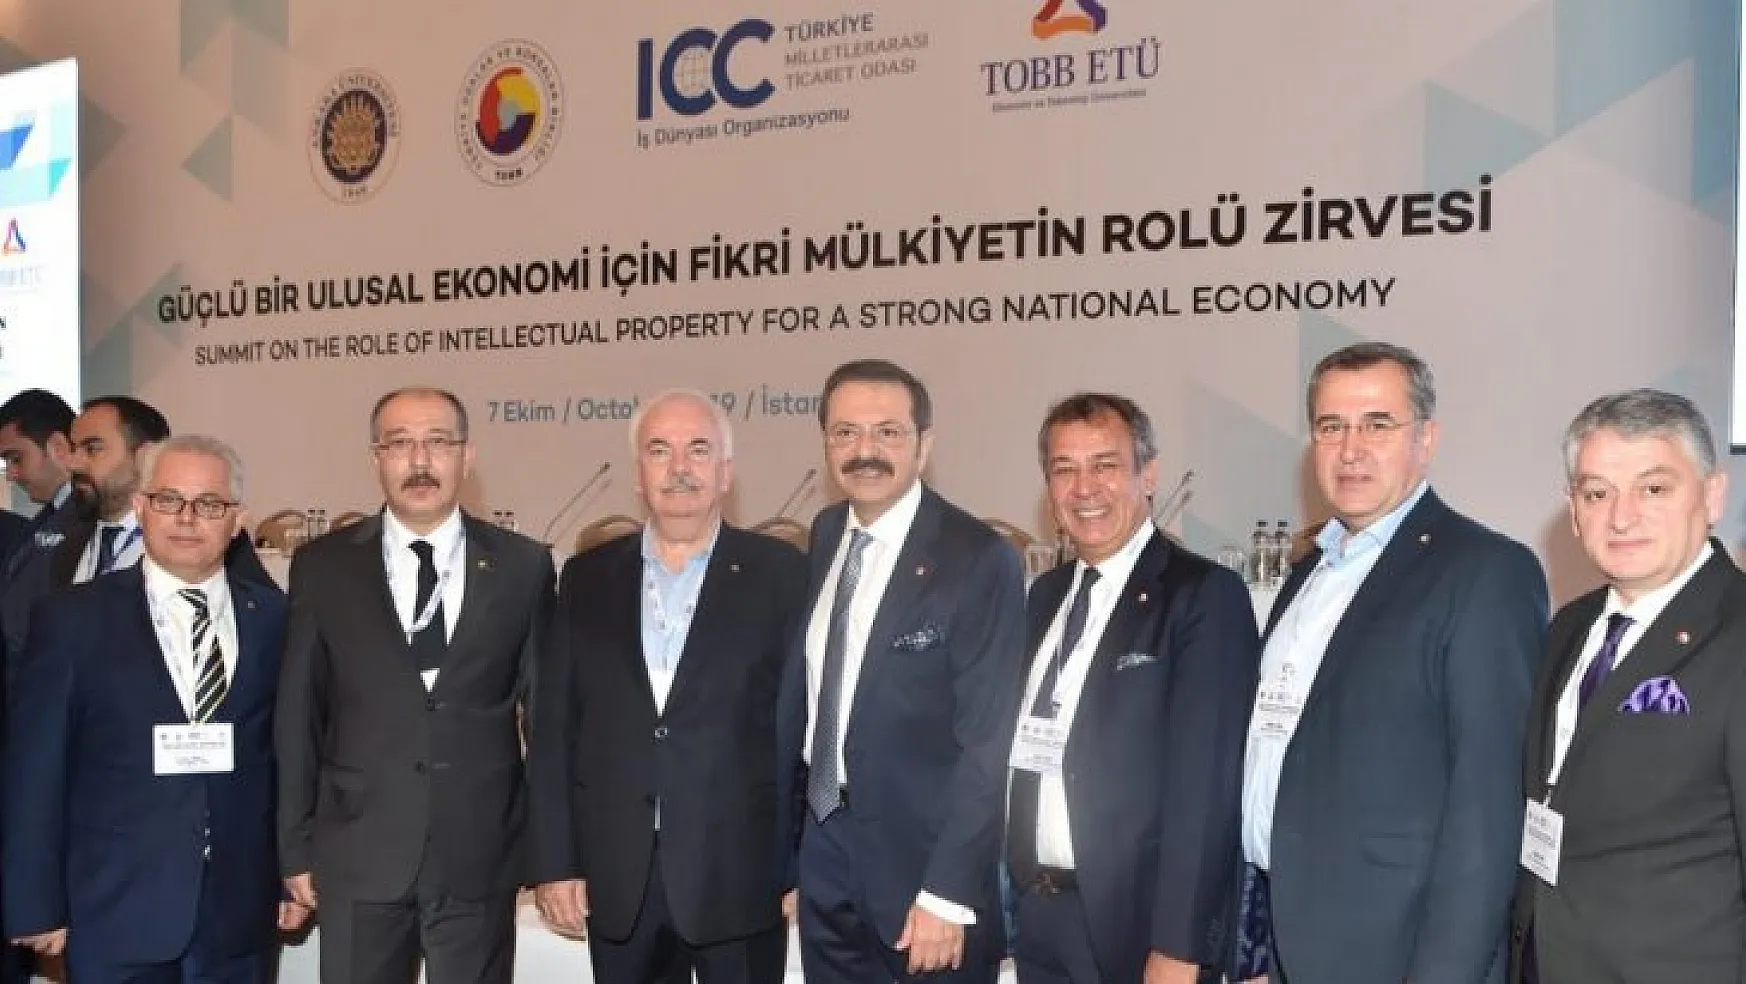 FTSO Başkanı Çıralı, güçlü bir ulusal ekonomi için Fikri Mülkiyetin Rolü Zirvesine katıldı